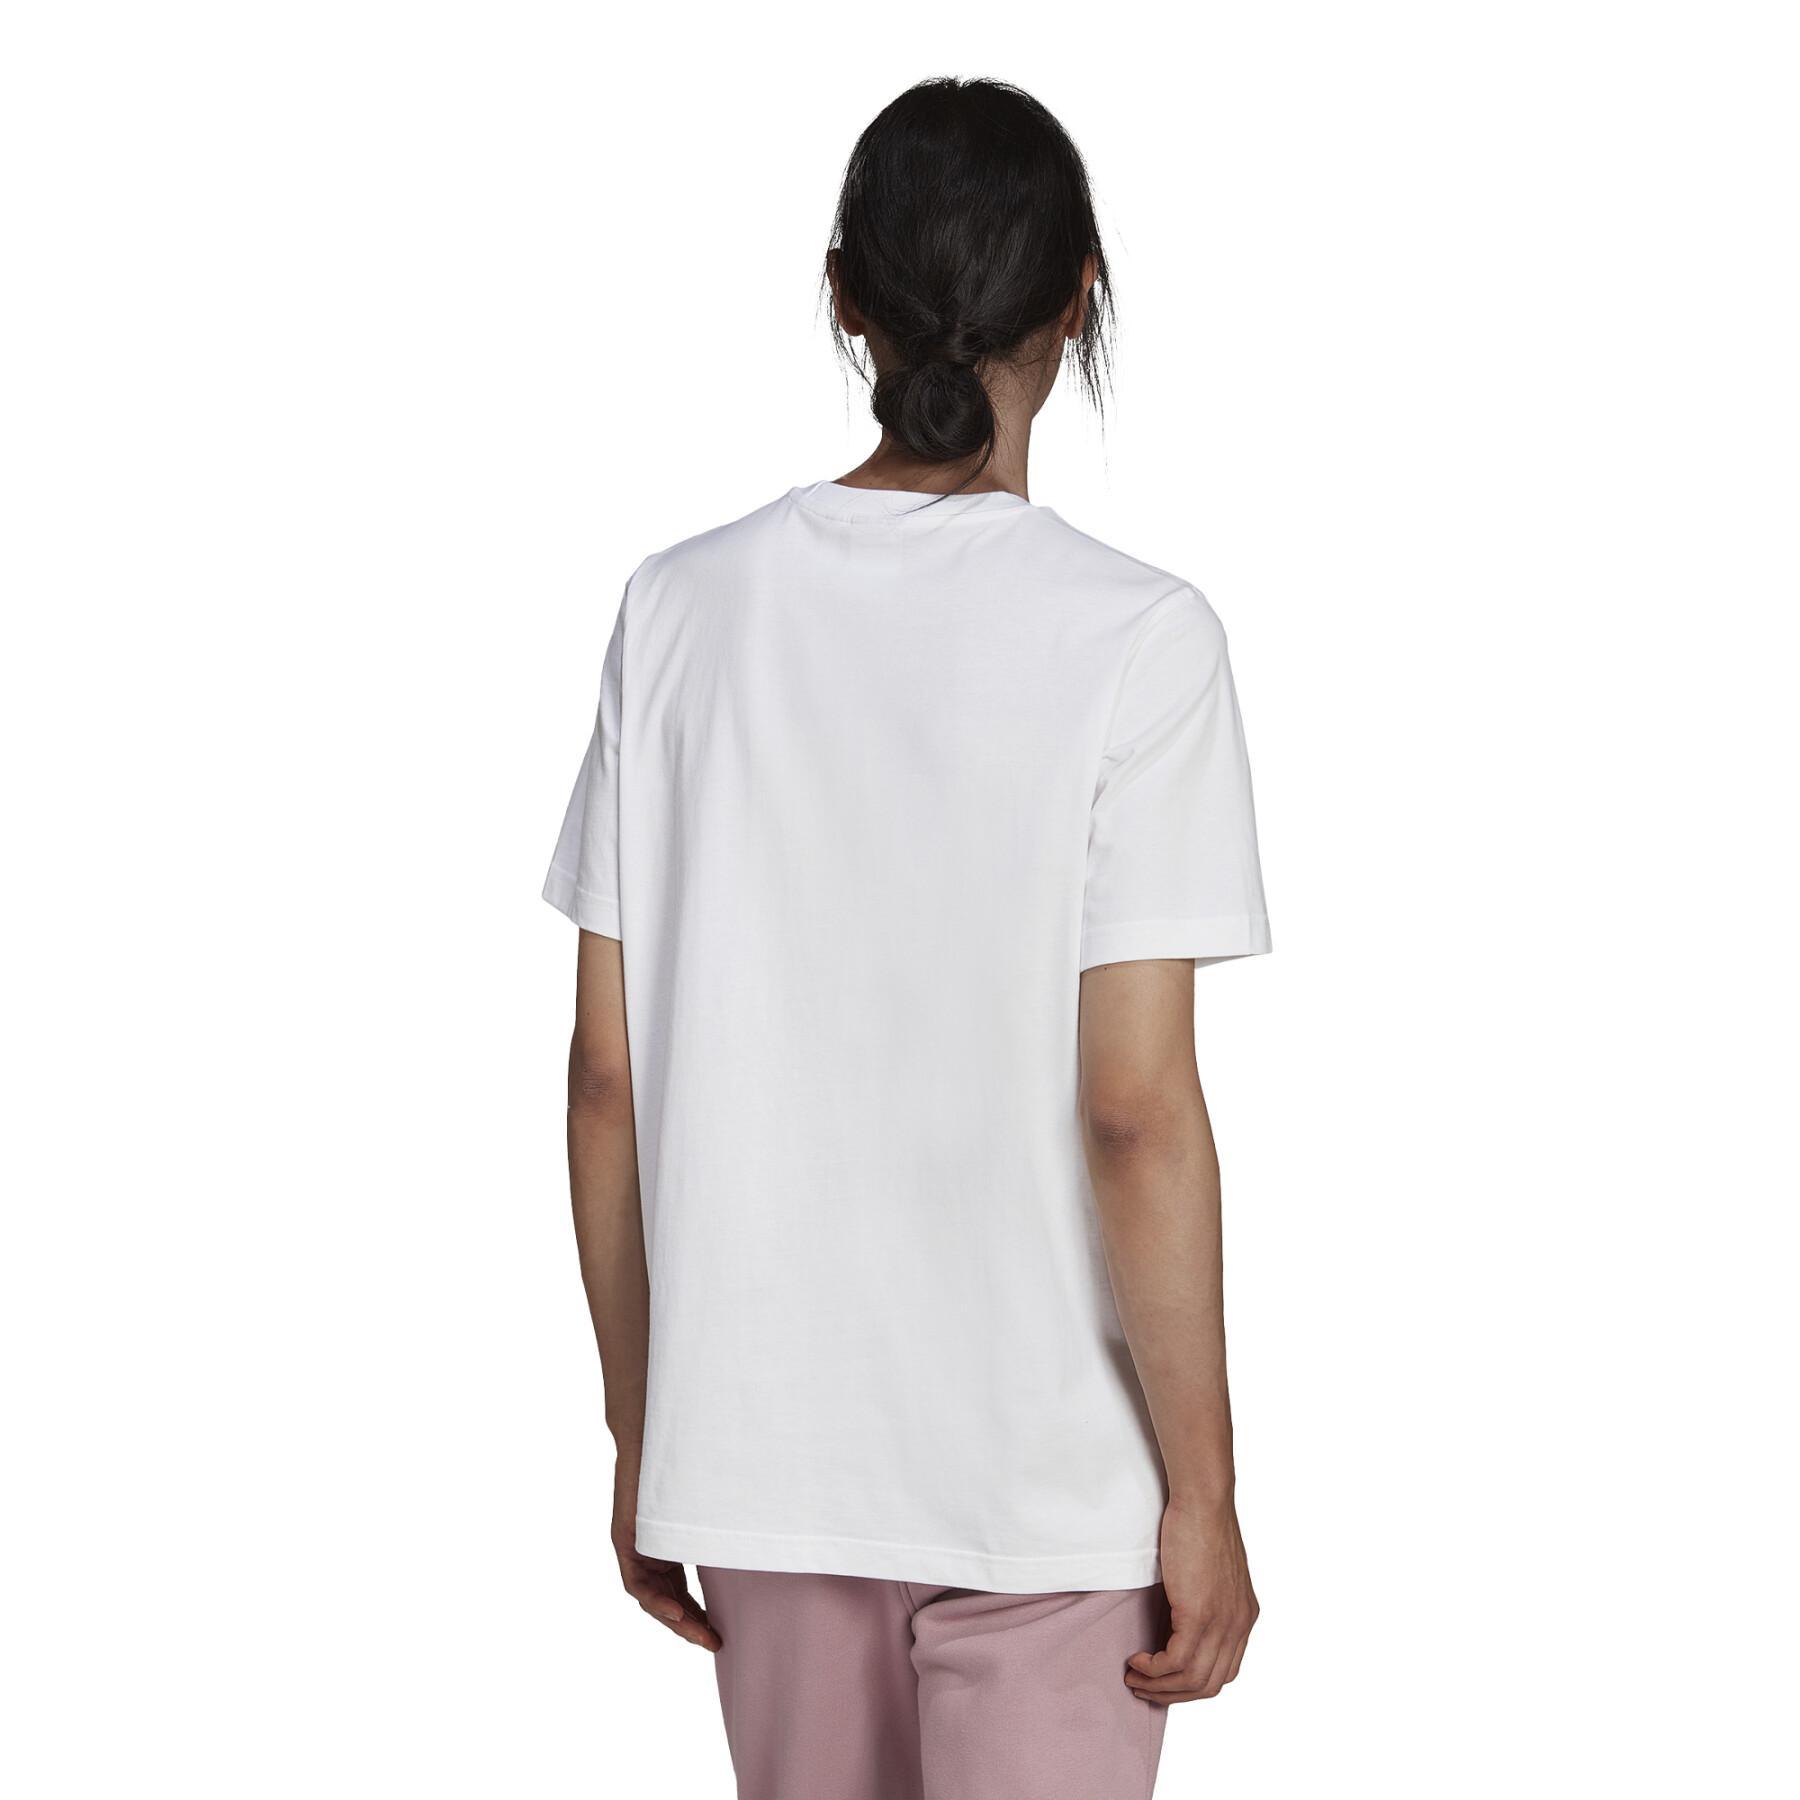 T-shirt adidas Originals Adicolor s Trefoil